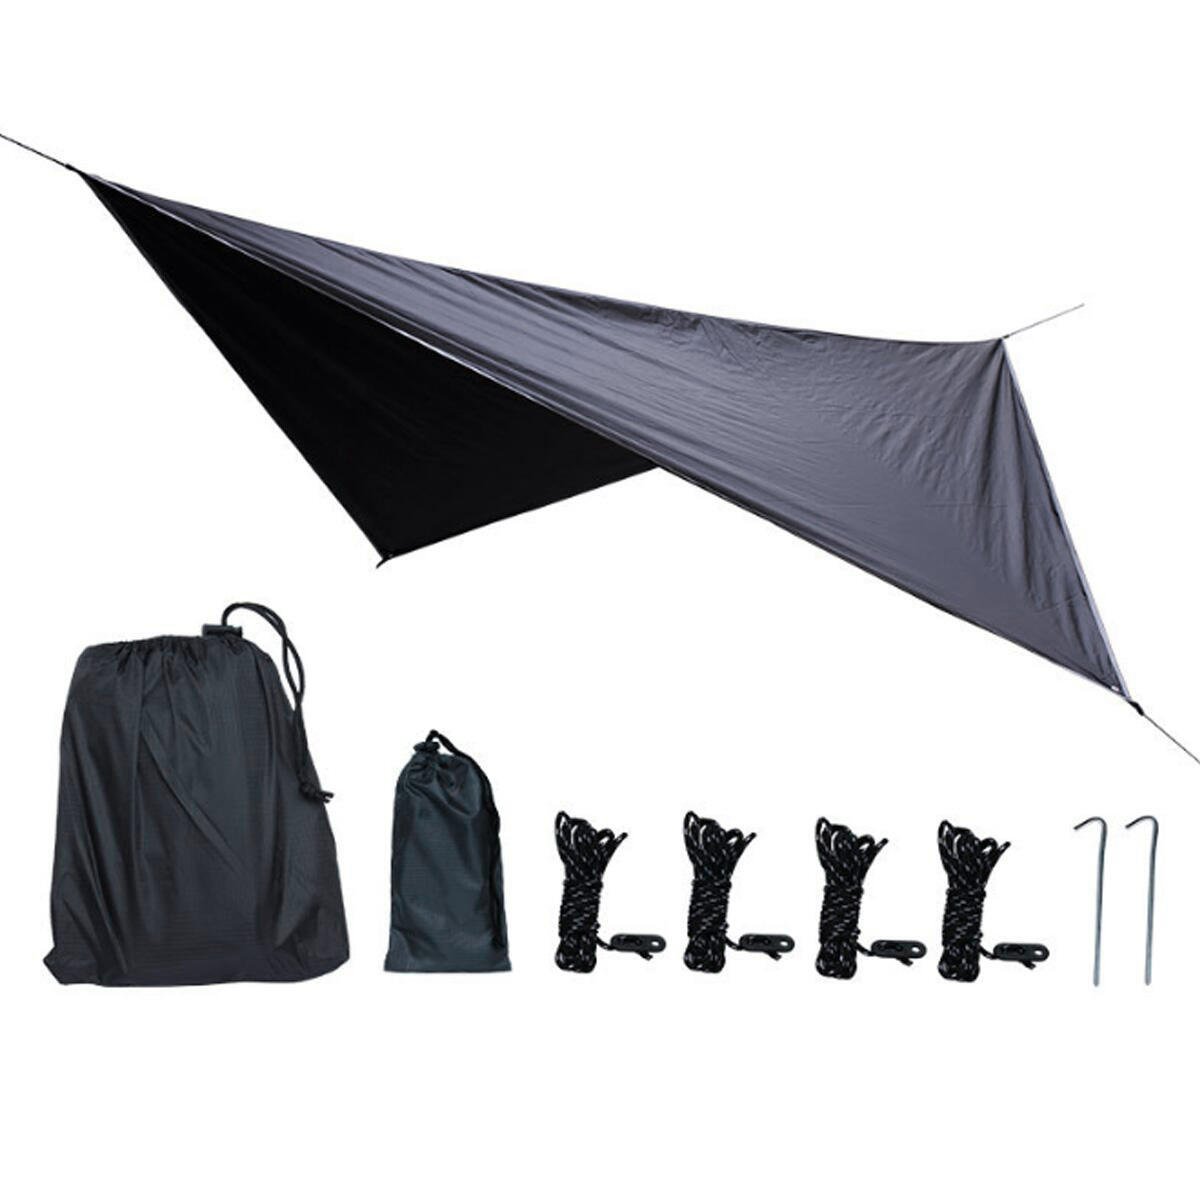 IPRee® 8 Stück / Set Outdoor Kepeak Zelt Plane Camping Hängemattenzelt Anit-UV Feuchtigkeitsbeständige Markise Sonnenschutz Regenschutz Wasserdicht